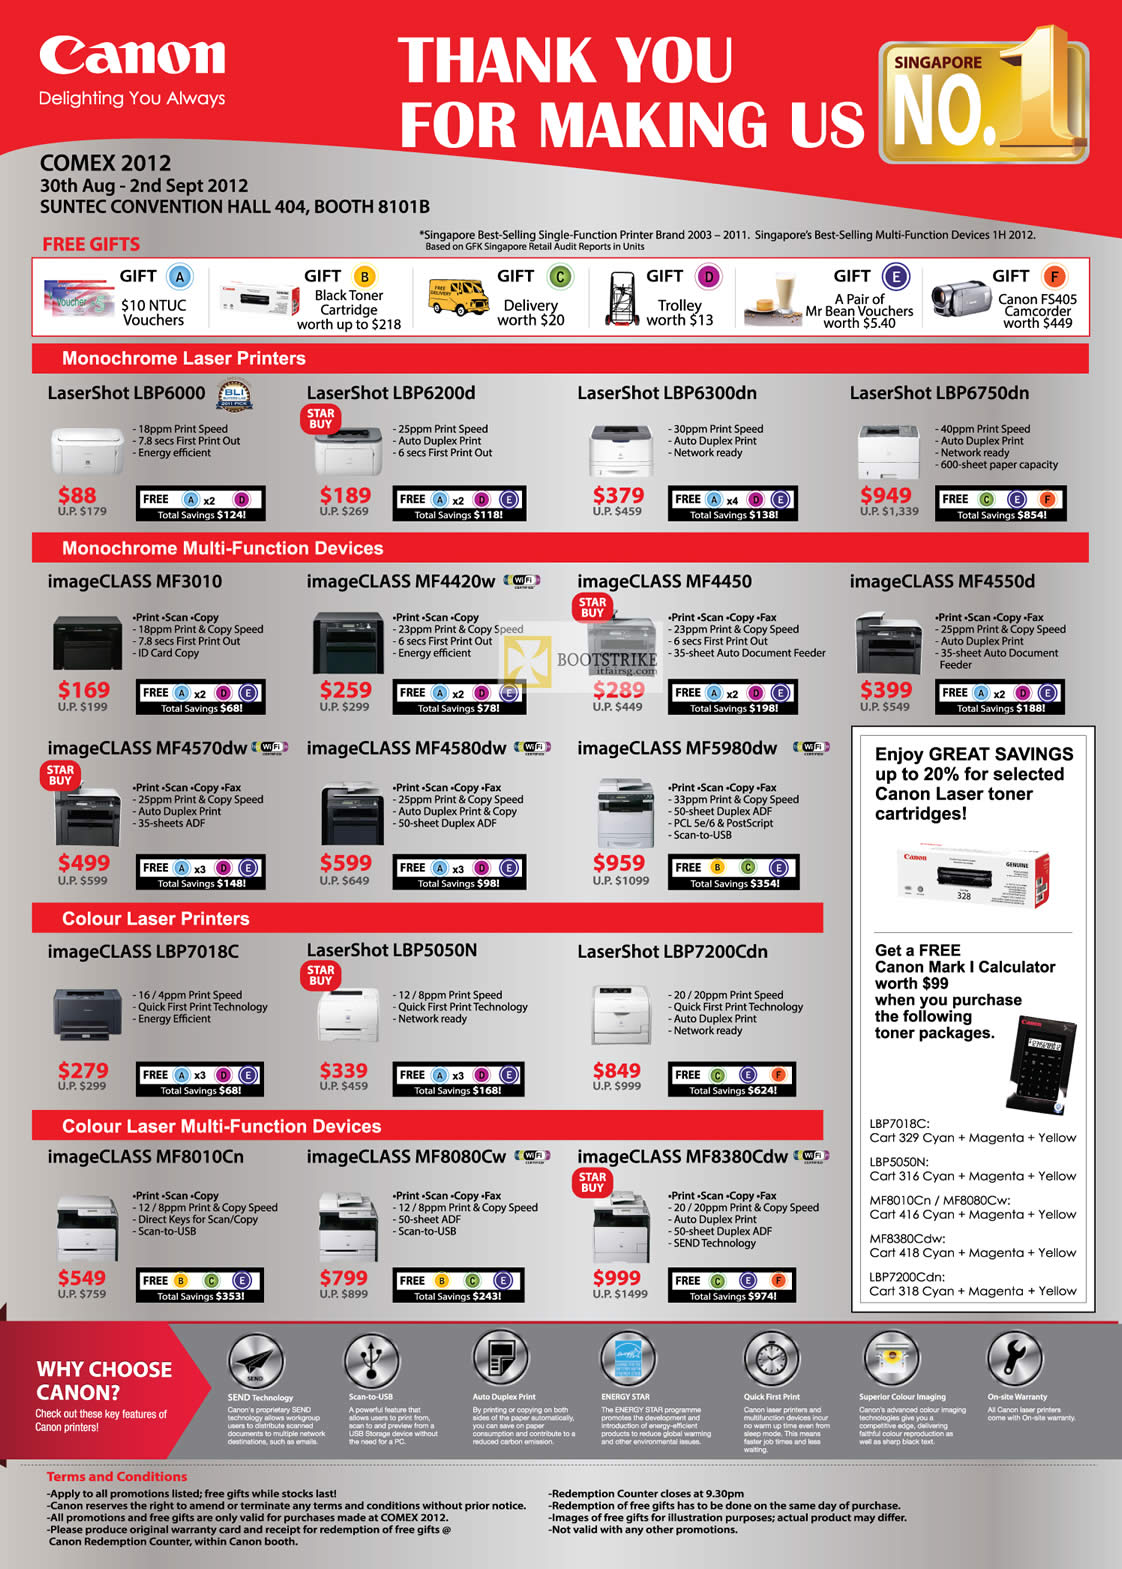 COMEX 2012 price list image brochure of Canon Printers Laser LaserShot LBP6000 LBP 6200D LBP6750DN, ImageCLASS MF3010 MF4570dw MF4580dw MF5980dw, LBP7018C, MF8380Cdw